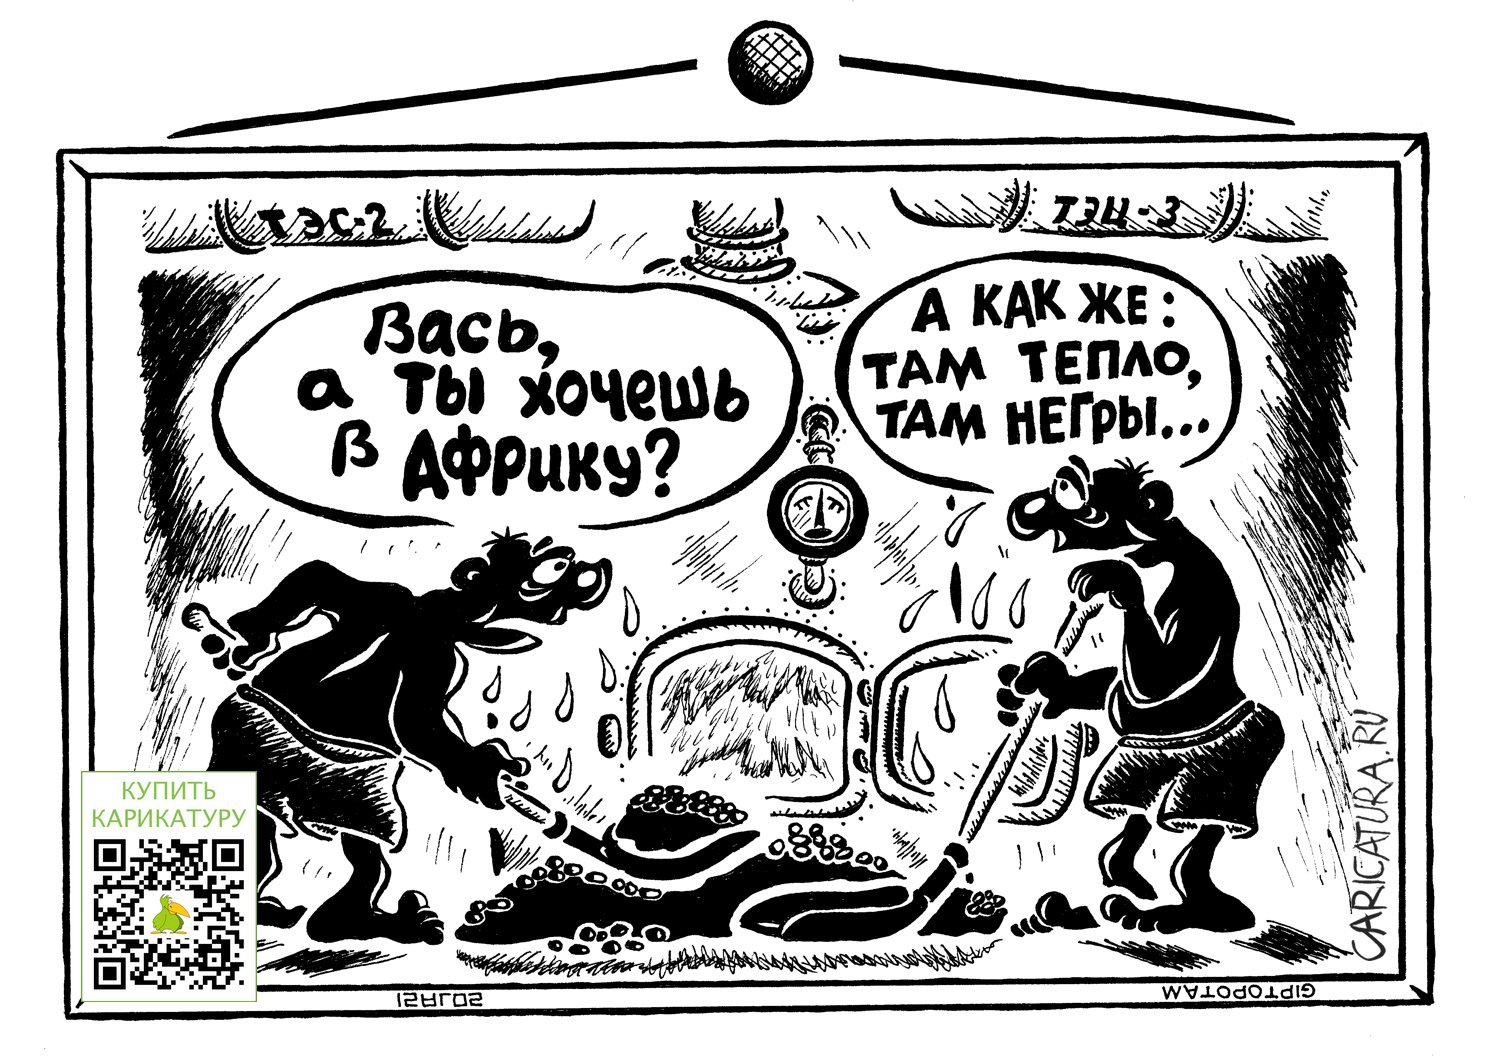 Карикатура "Знал бы прикуп, жил бы в Со...хо", Александр Евангелистов